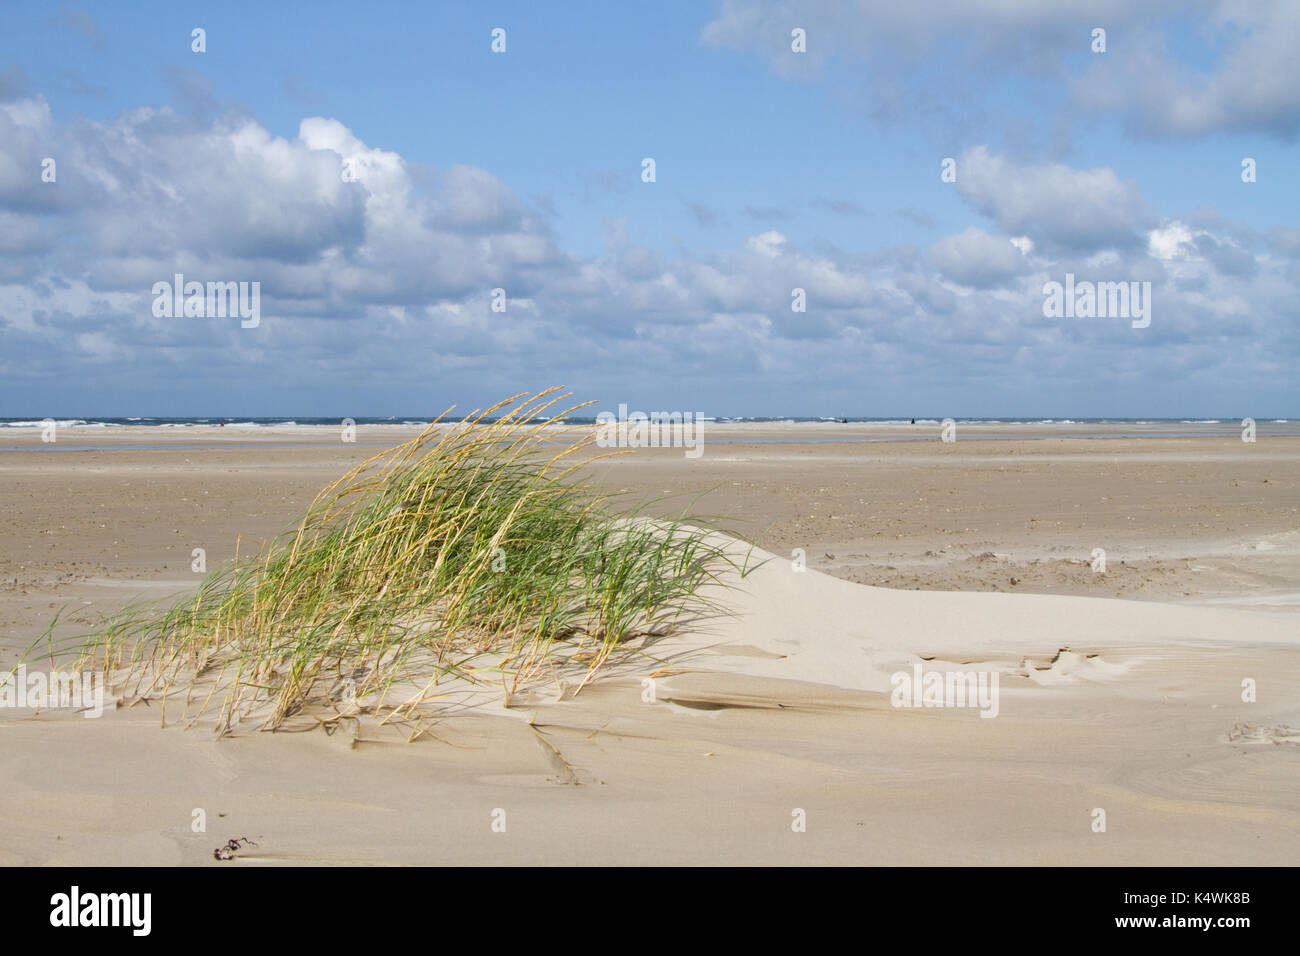 La table de sable, formant un embryon de dune, la première phase de développement des dunes Banque D'Images